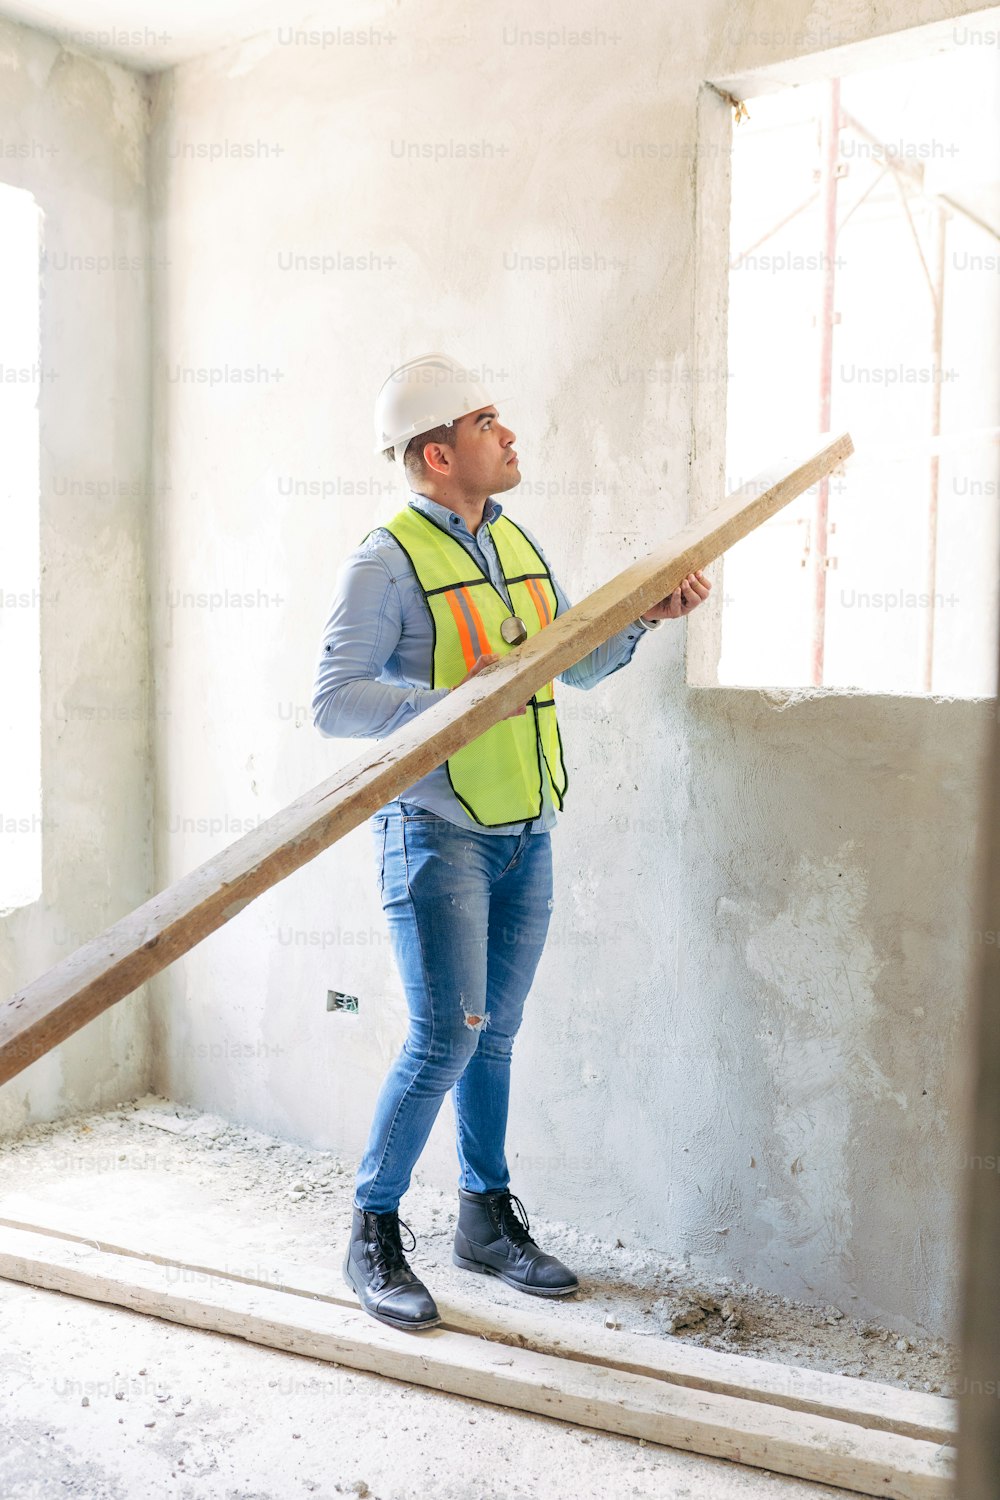 Un homme portant un casque de sécurité et un gilet de sécurité debout dans une pièce en construction